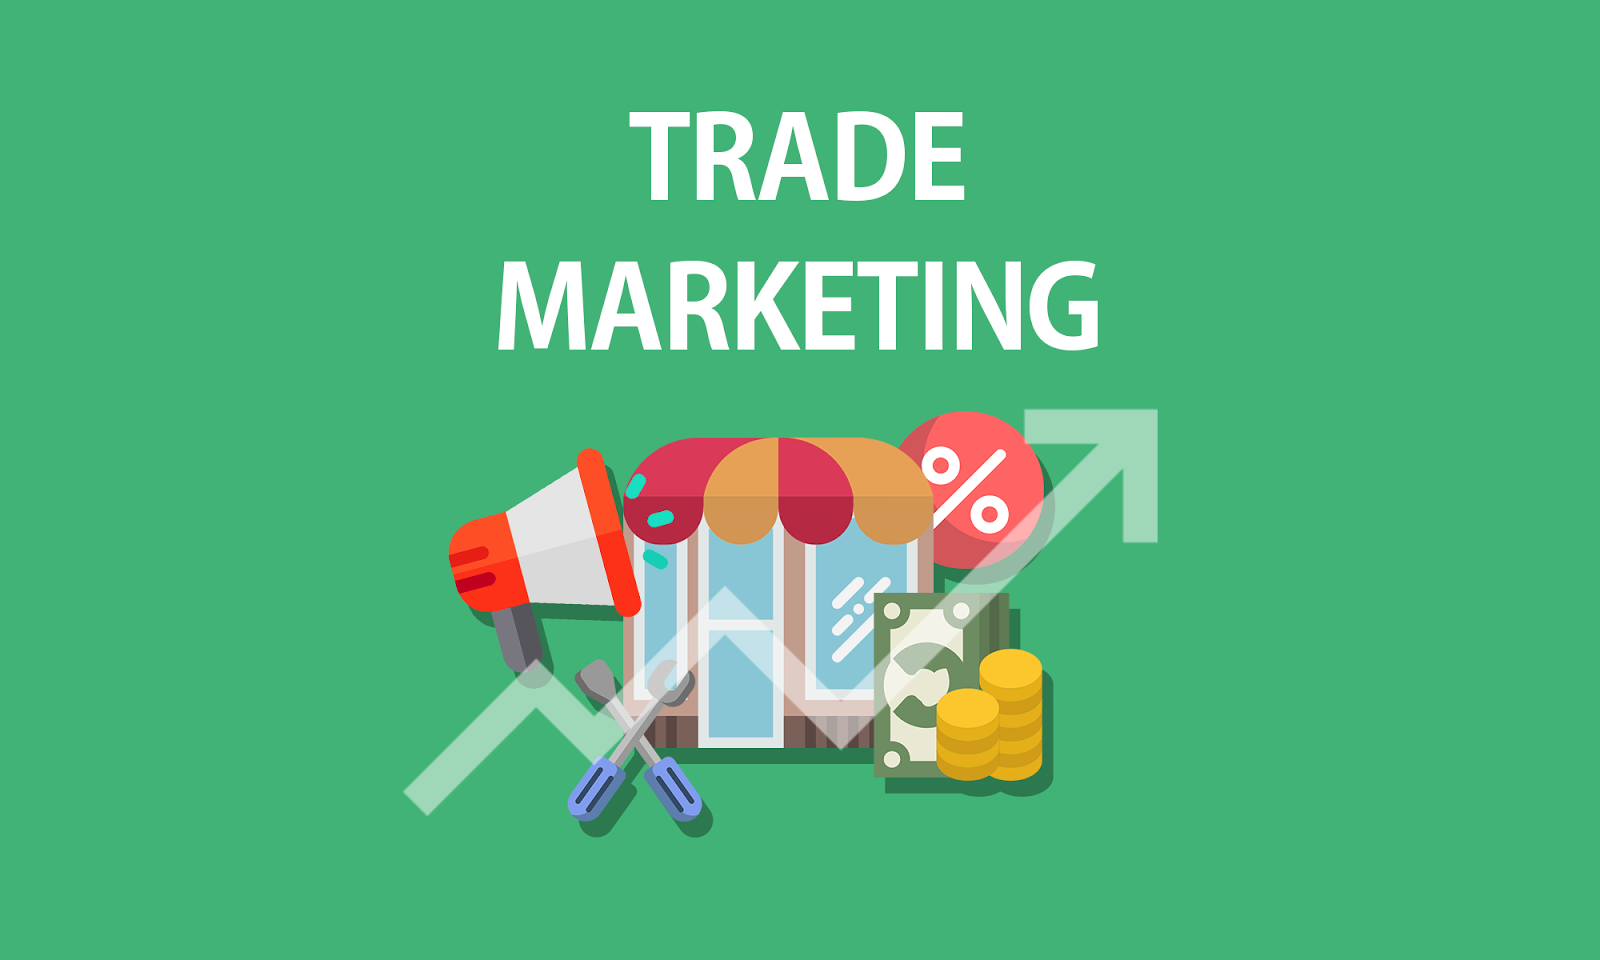 Digital Trade Marketing - bước đột phá trong ngành bán lẻ